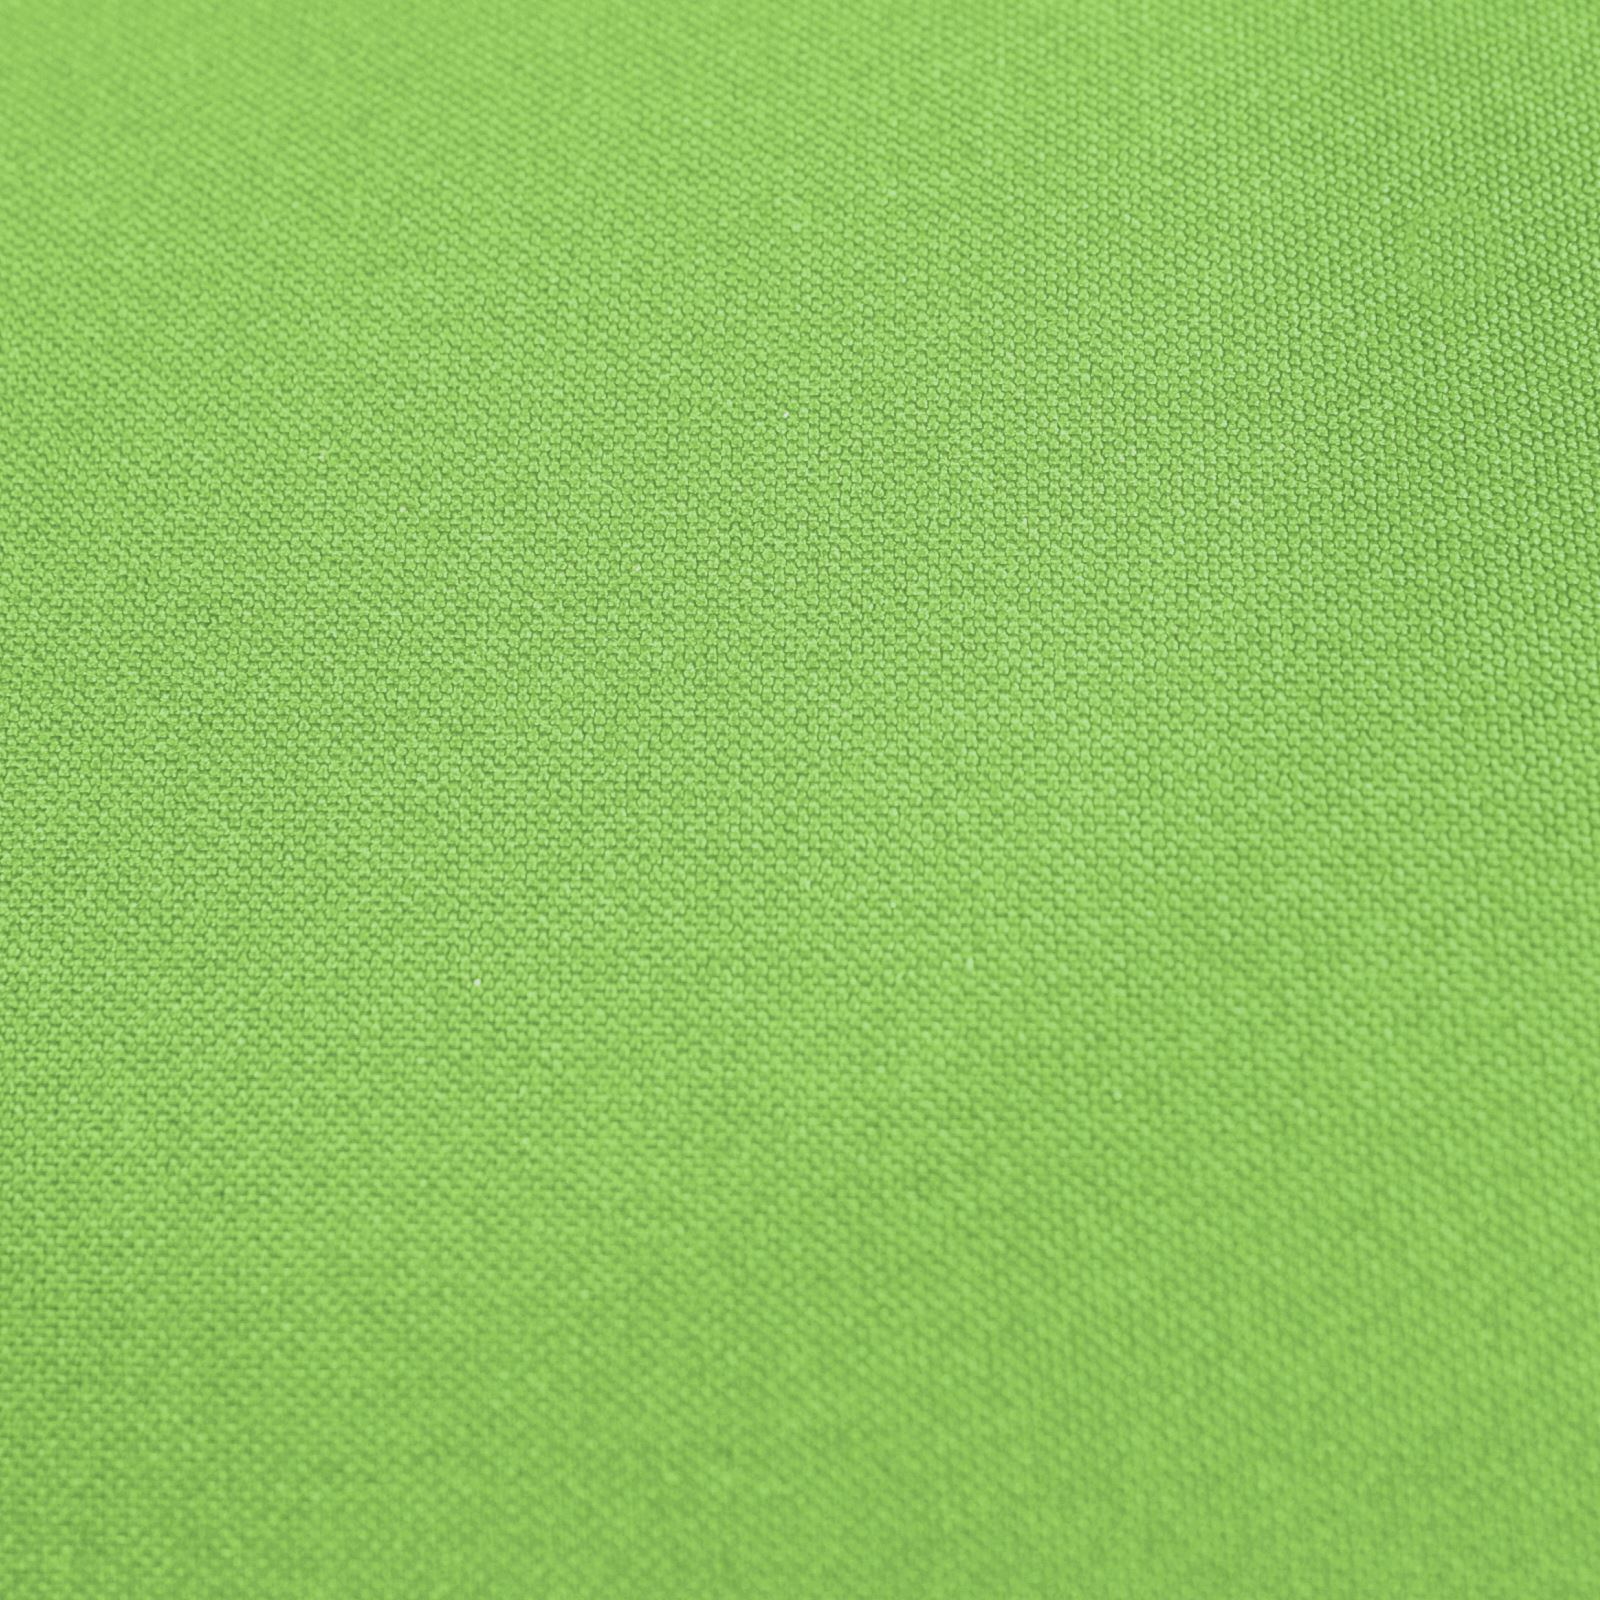 Komplettkissen Polyester-Hellgrün / 40x40 cm